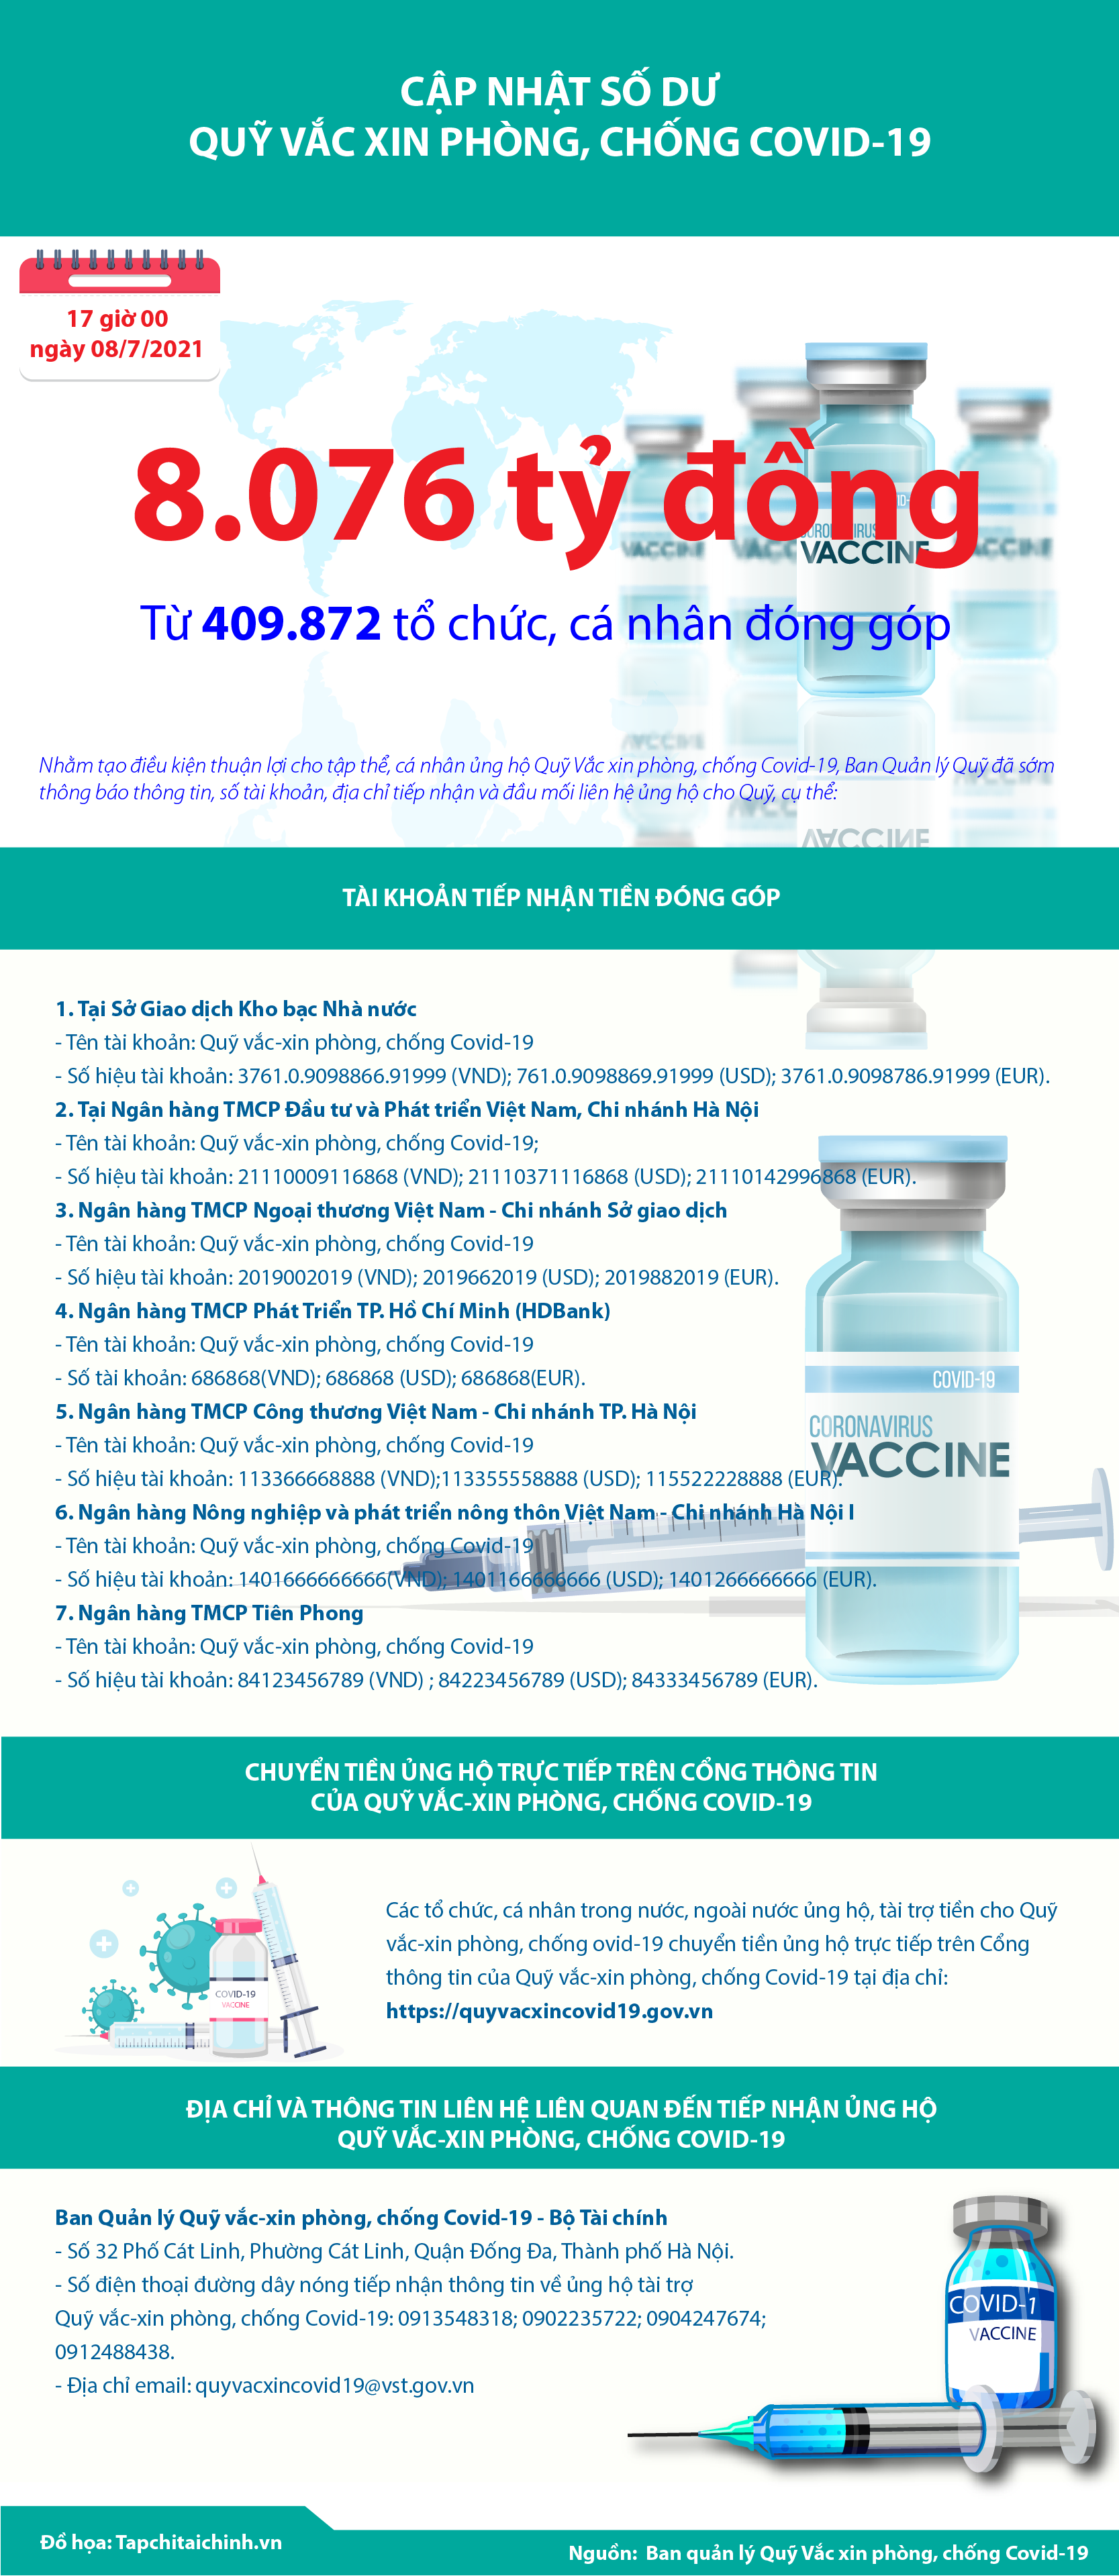 [Infographics] Quỹ Vắc xin phòng, chống Covid-19 đã tiếp nhận ủng hộ 8.076 tỷ đồng - Ảnh 1